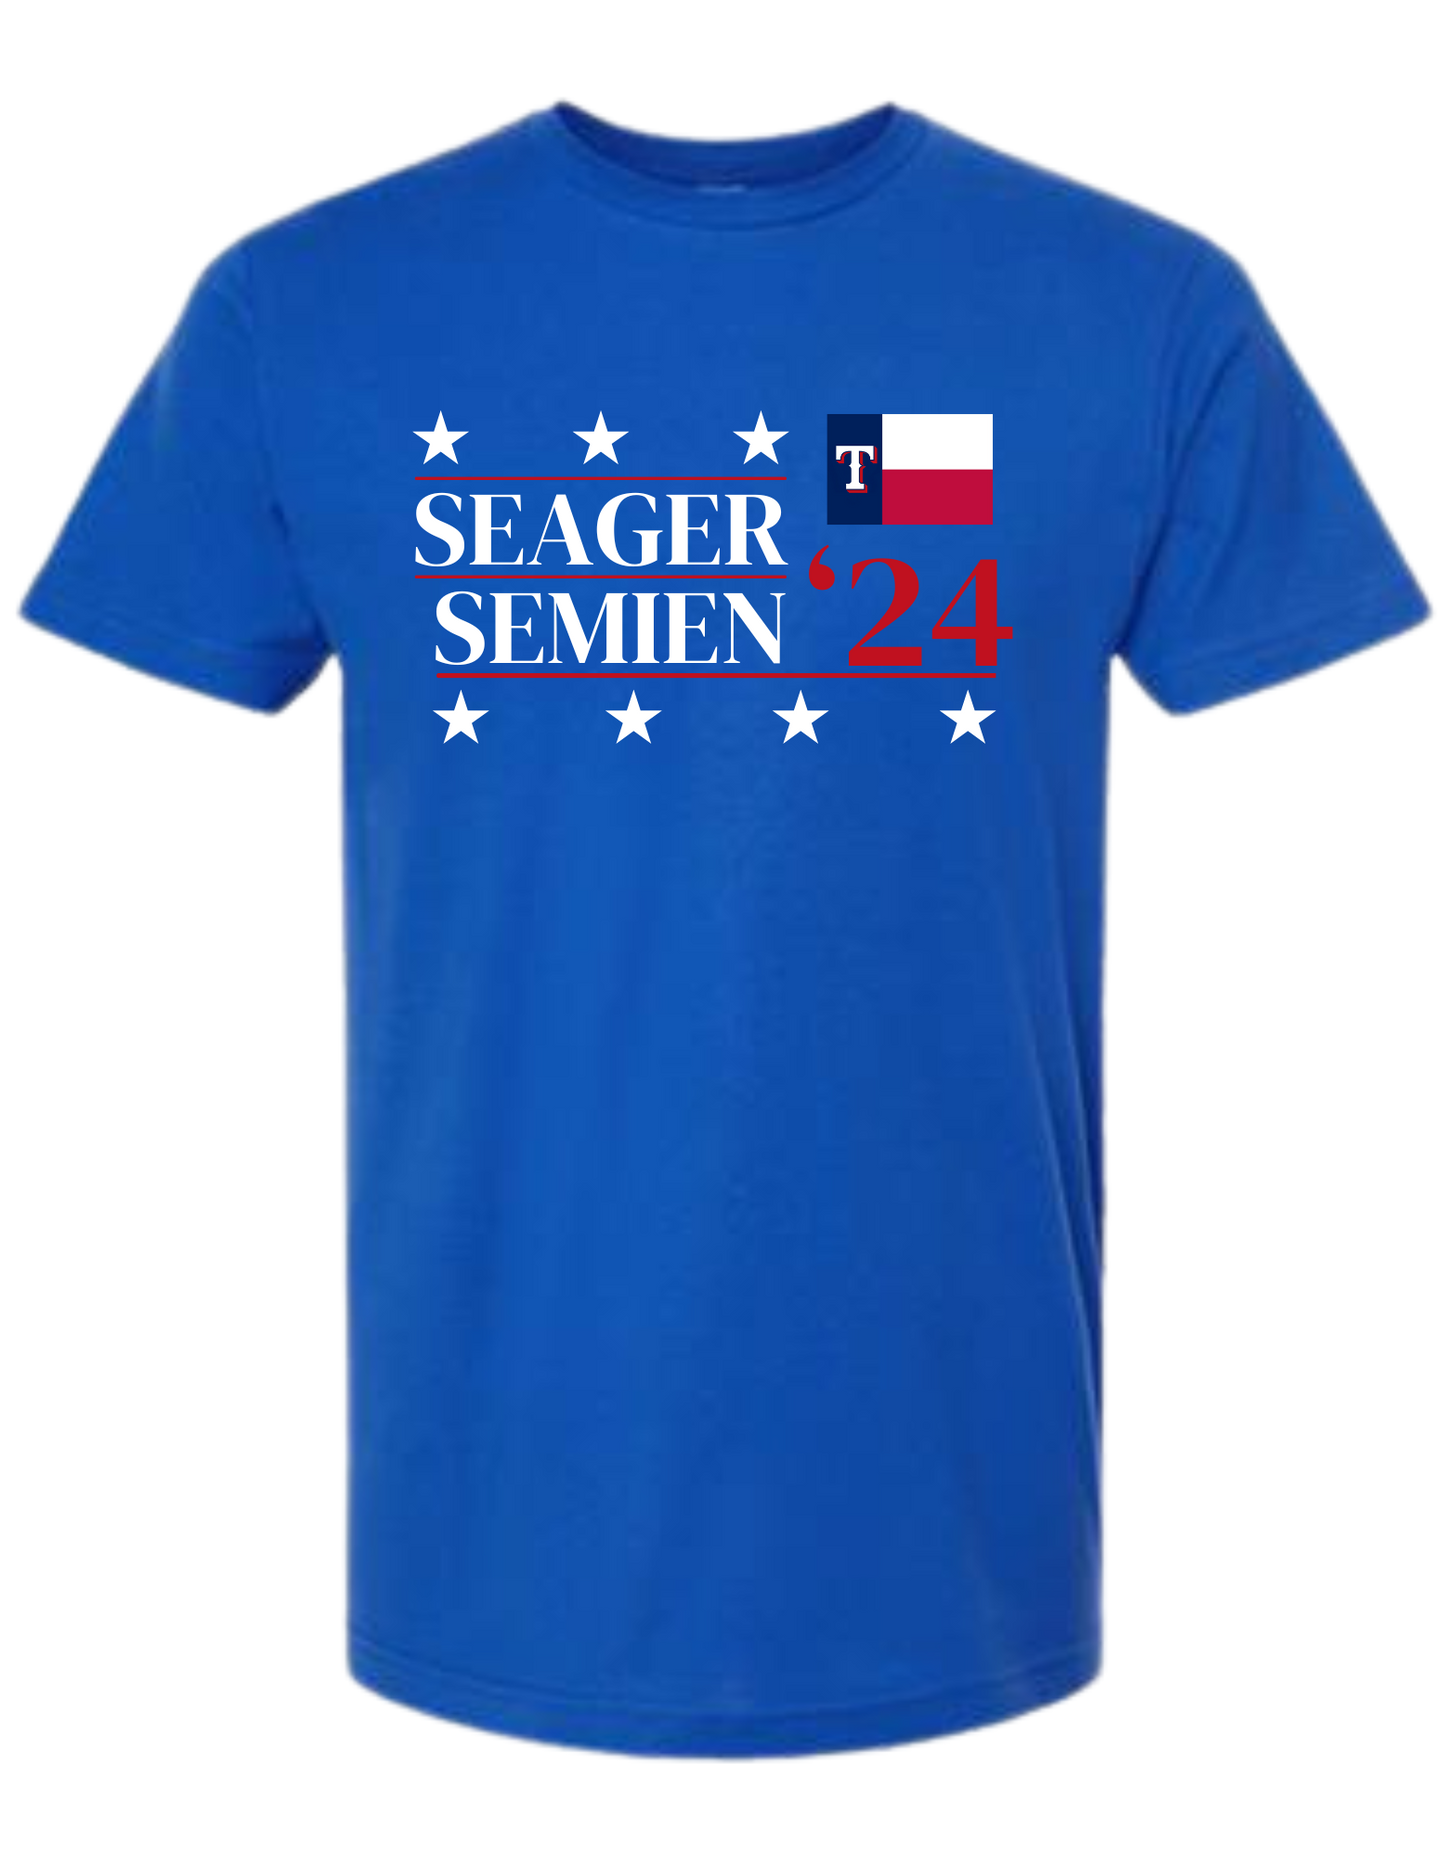 Seager Semien 2024 Texas Rangers Tee - Unisex